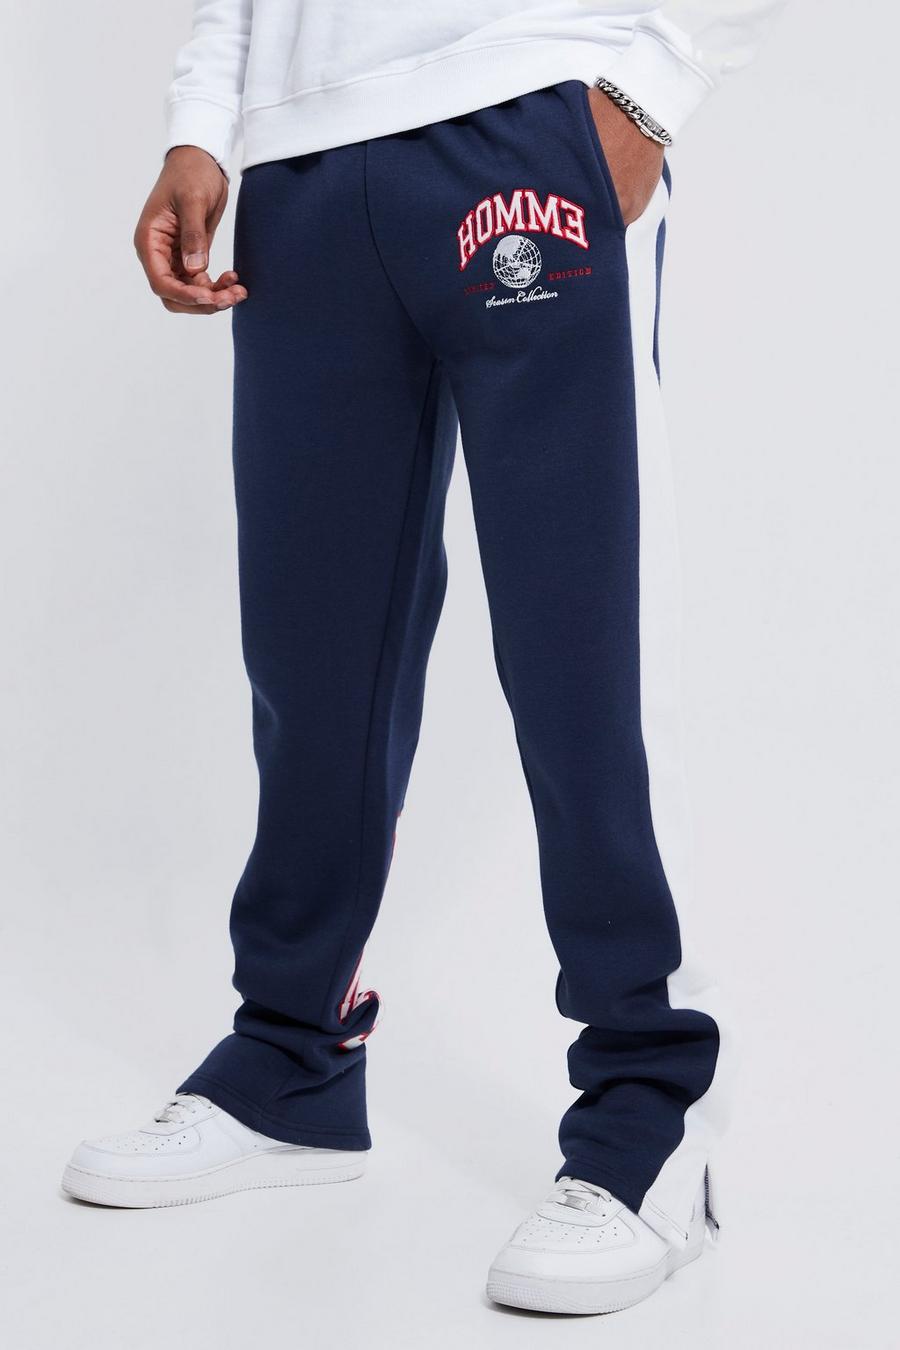 Pantalón deportivo Tall con aplique universitario de y abertura en el bajo, Navy azul marino